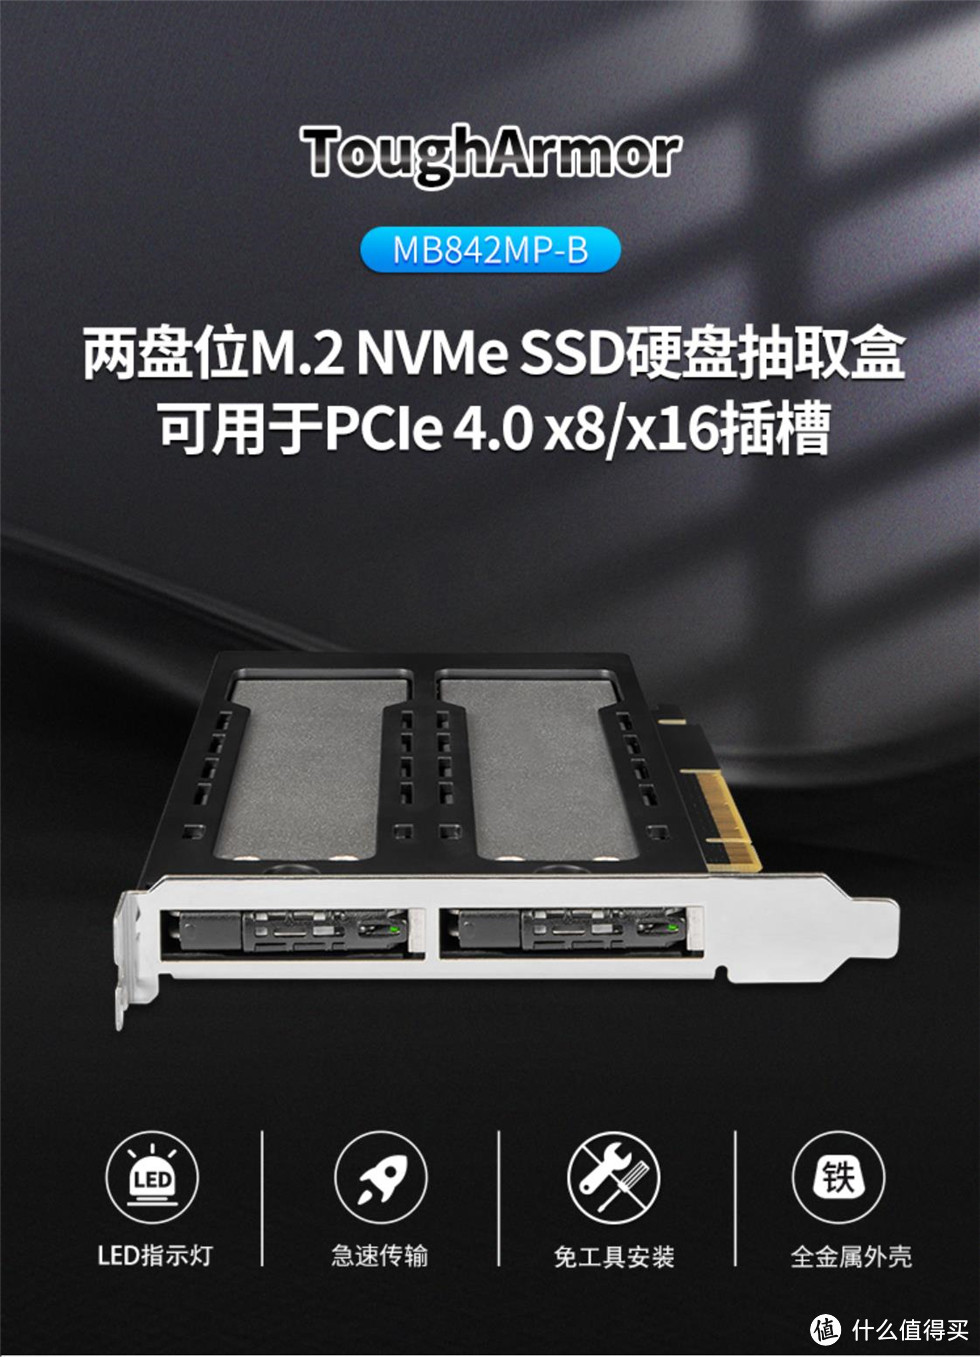 轻松替换M.2硬盘，支持PCIe 4.0 SSD高速互传——ICY DOCK双盘位M.2 NVMe SSD硬盘PCIe转接卡使用体验